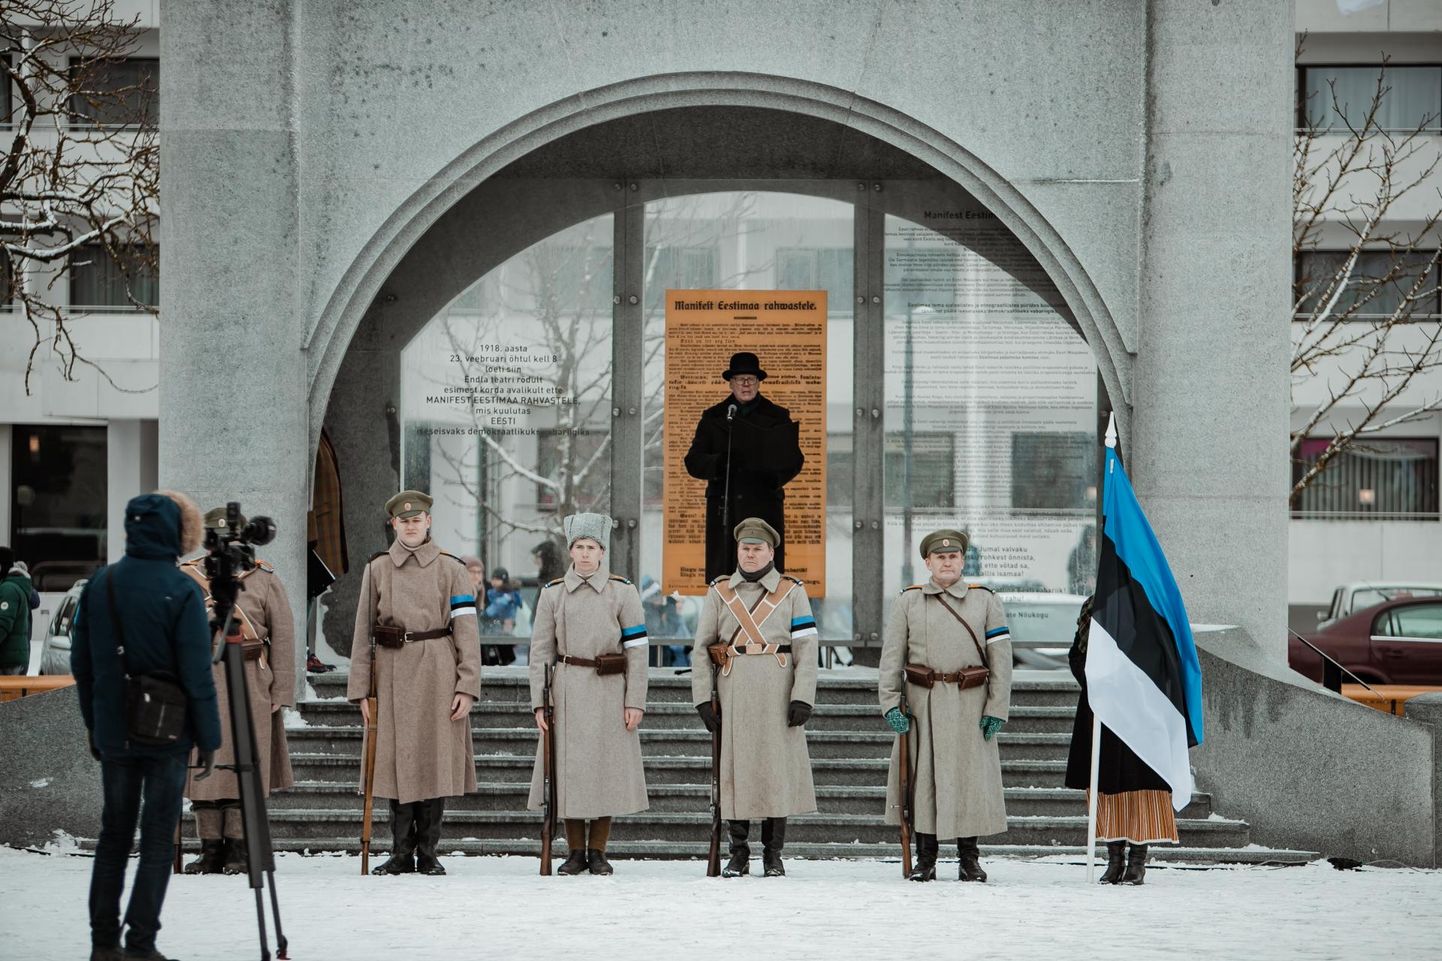 Tänavugi loetakse 23. veebruaril Pärnus ette iseseisvusmanifest. Pildil mullune üritus.